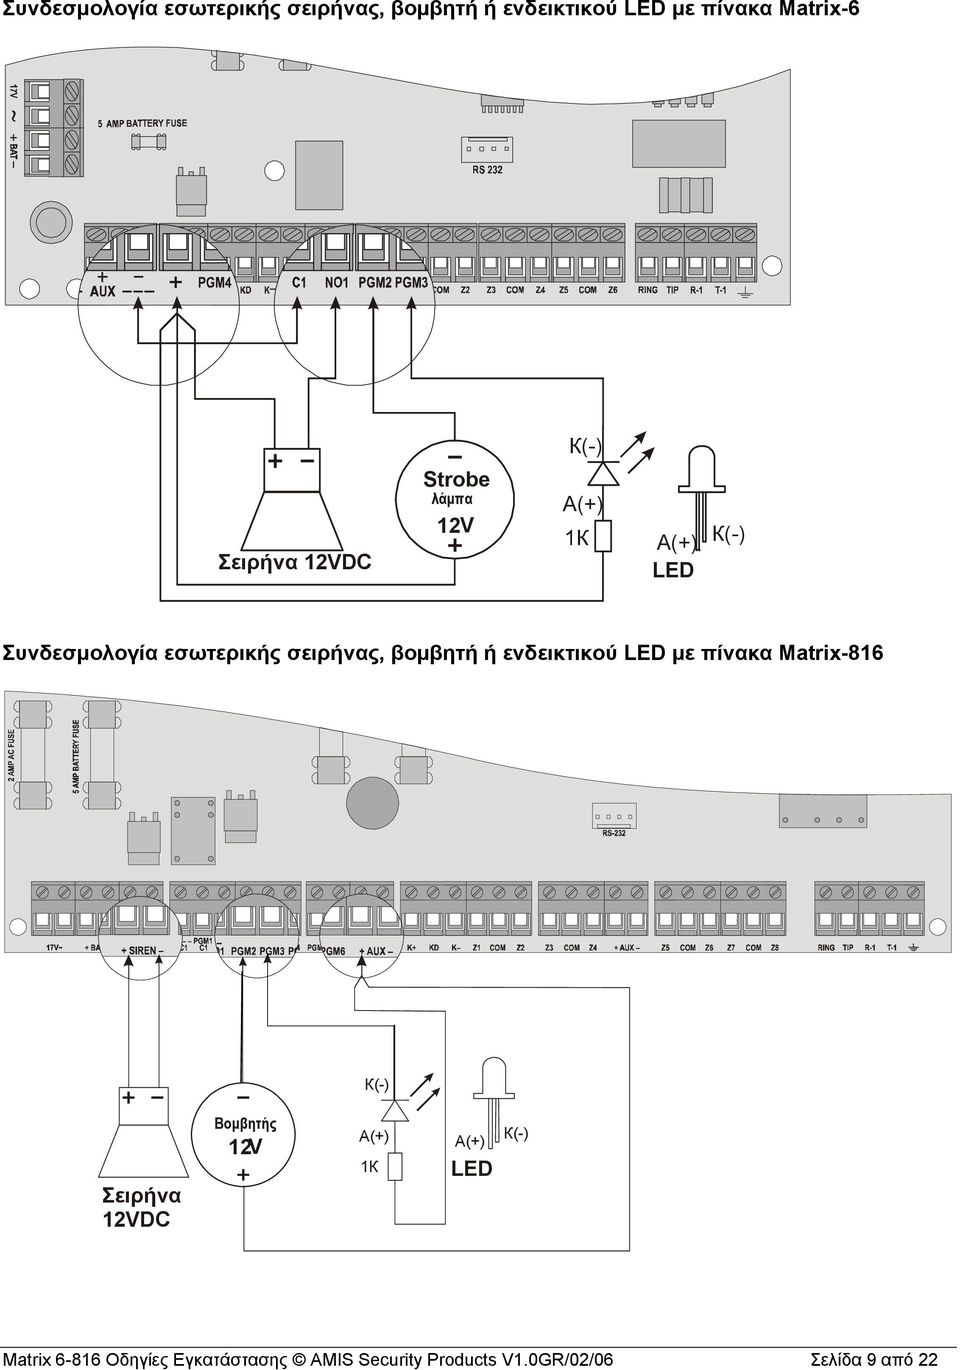 βομβητή ή ενδεικτικού LED με πίνακα Matrix-816 К(-) Σειρήνα 12VDC Βομβητής V 12 А(+) 1К